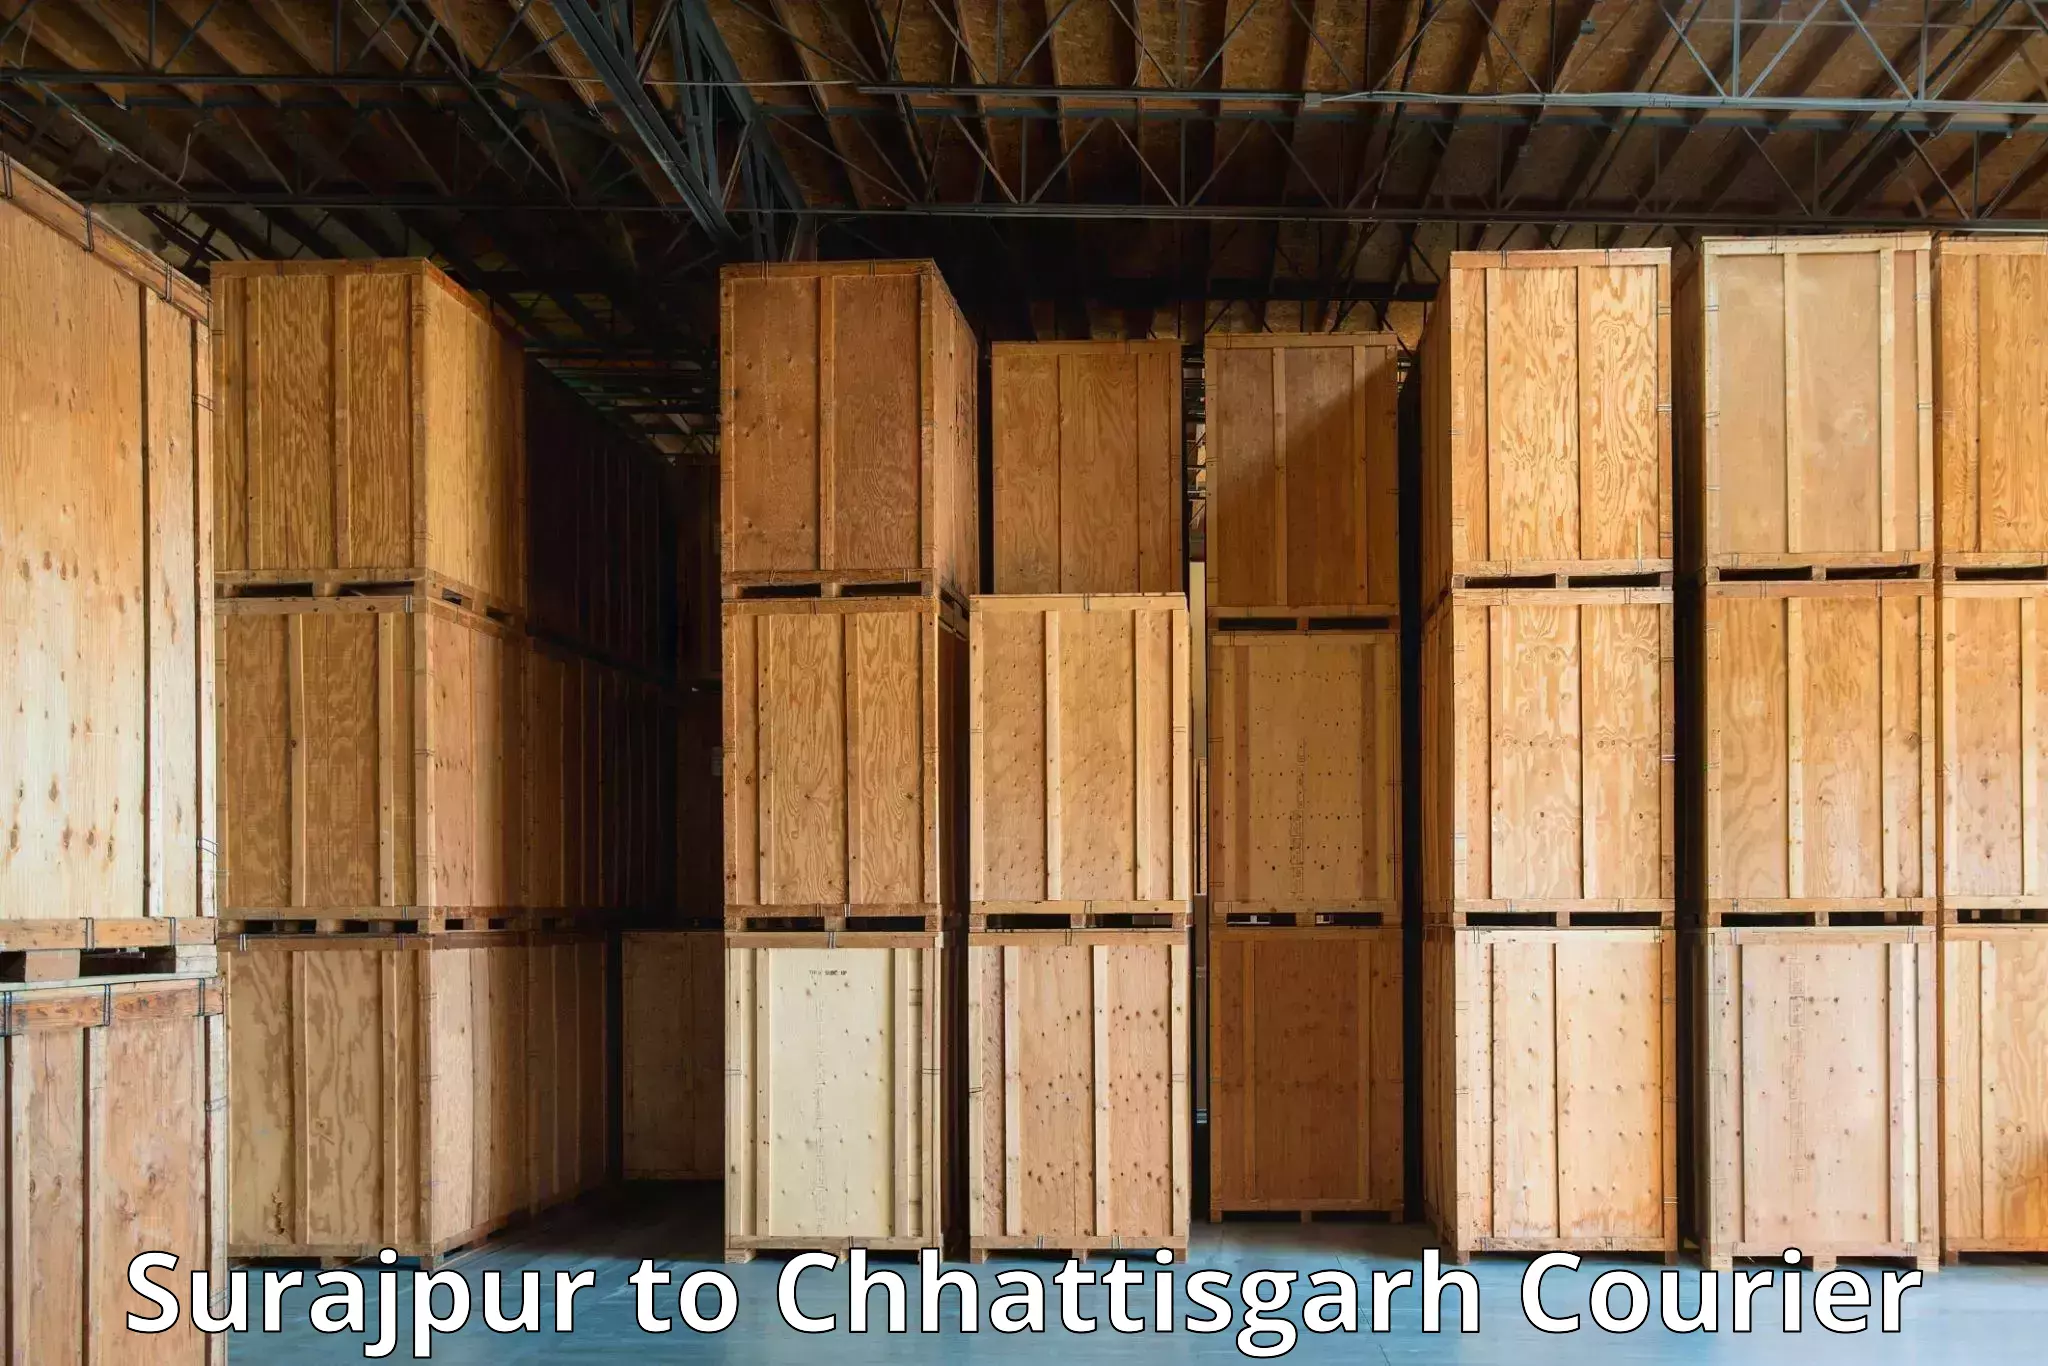 Customer-centric shipping Surajpur to Raigarh